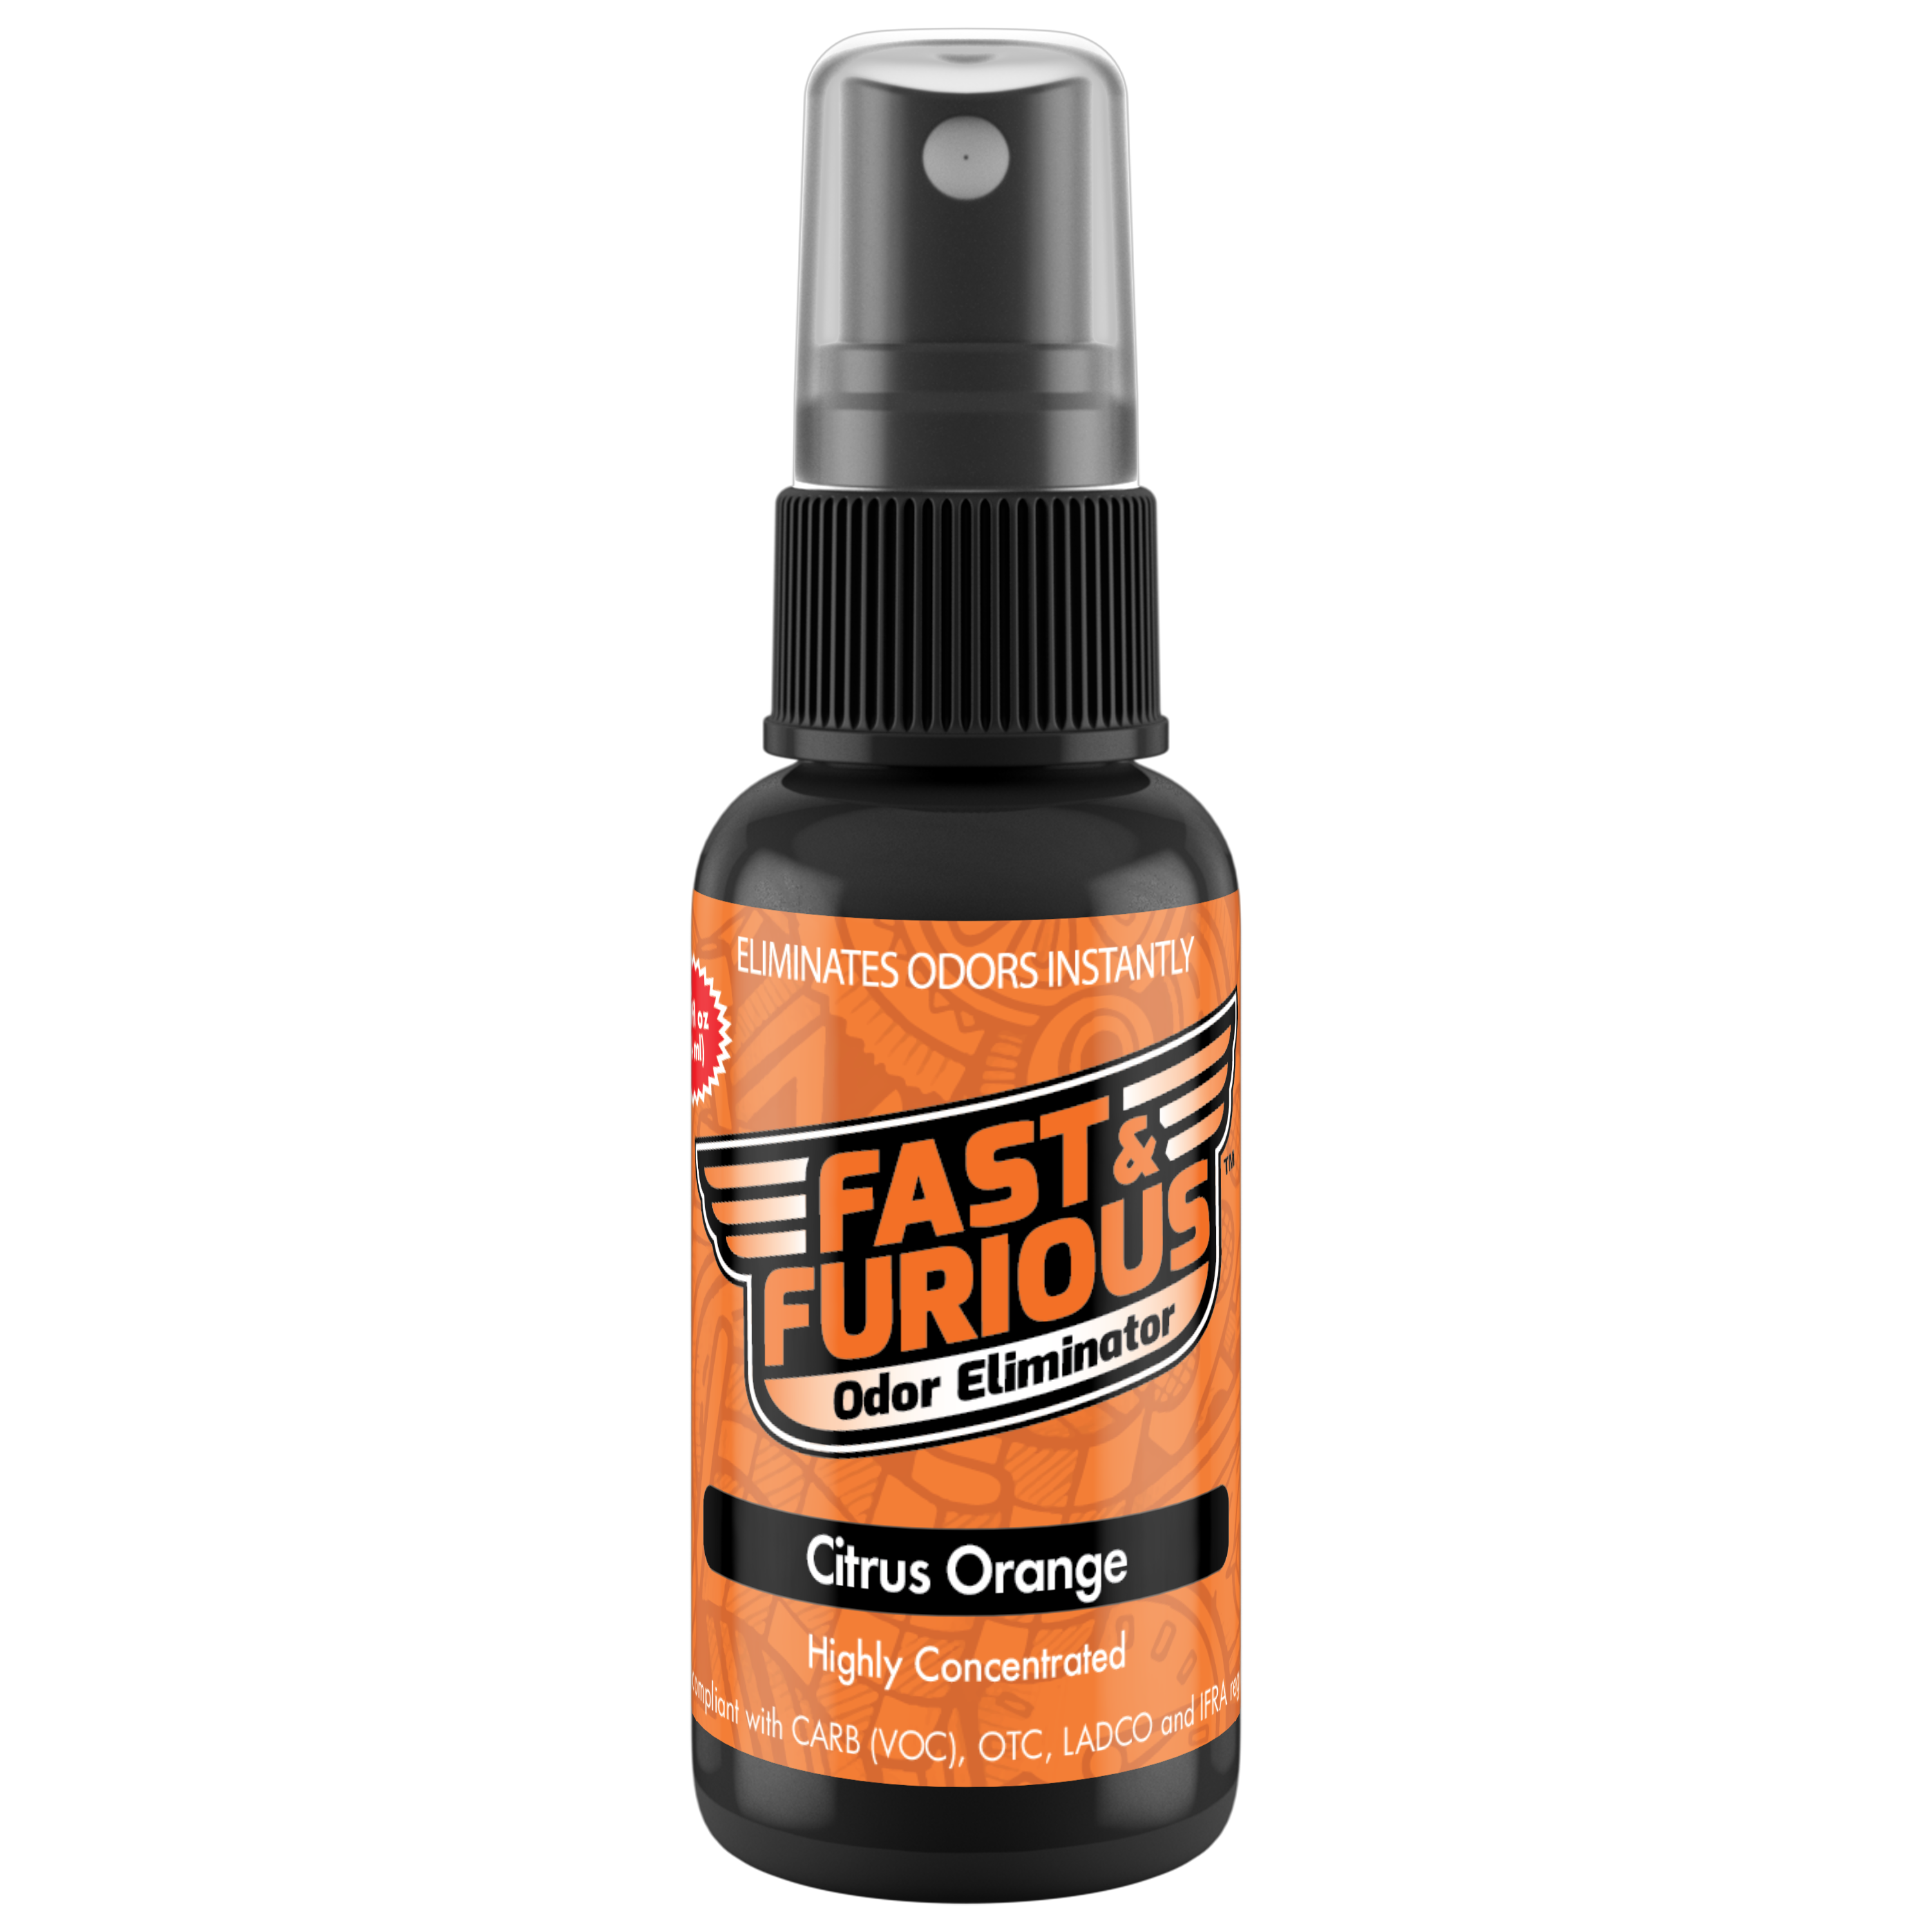 Fast and Furious Odor Eliminator - Citrus Orange Scent